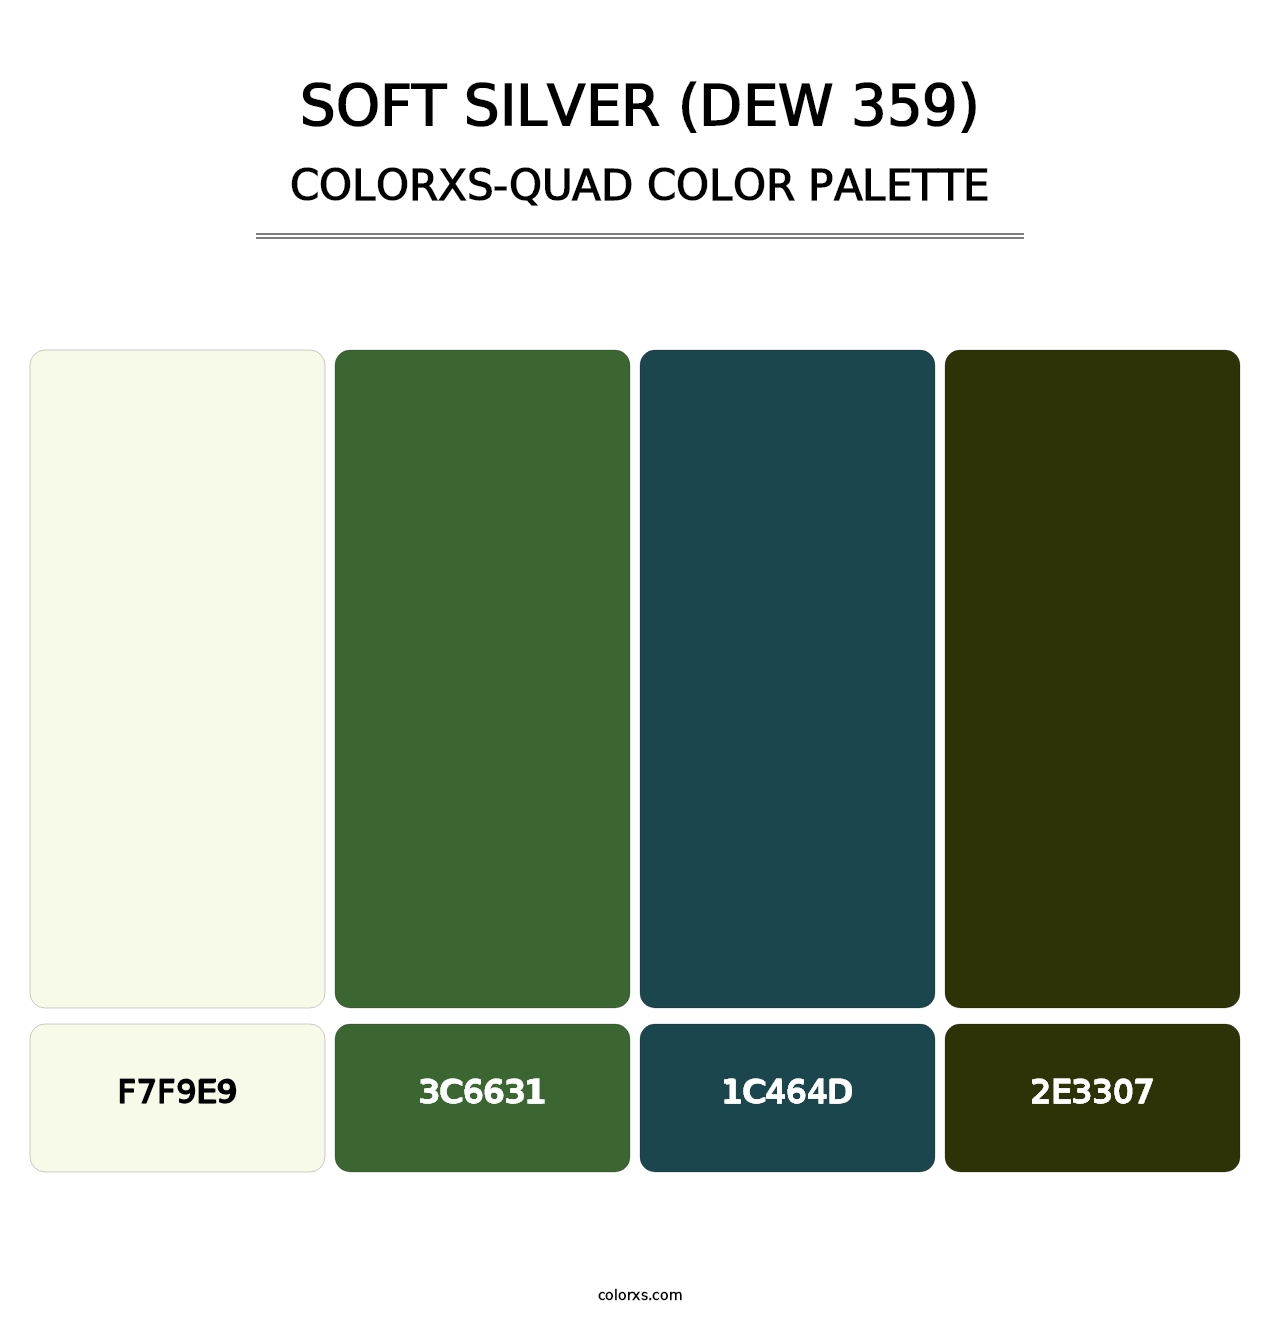 Soft Silver (DEW 359) - Colorxs Quad Palette